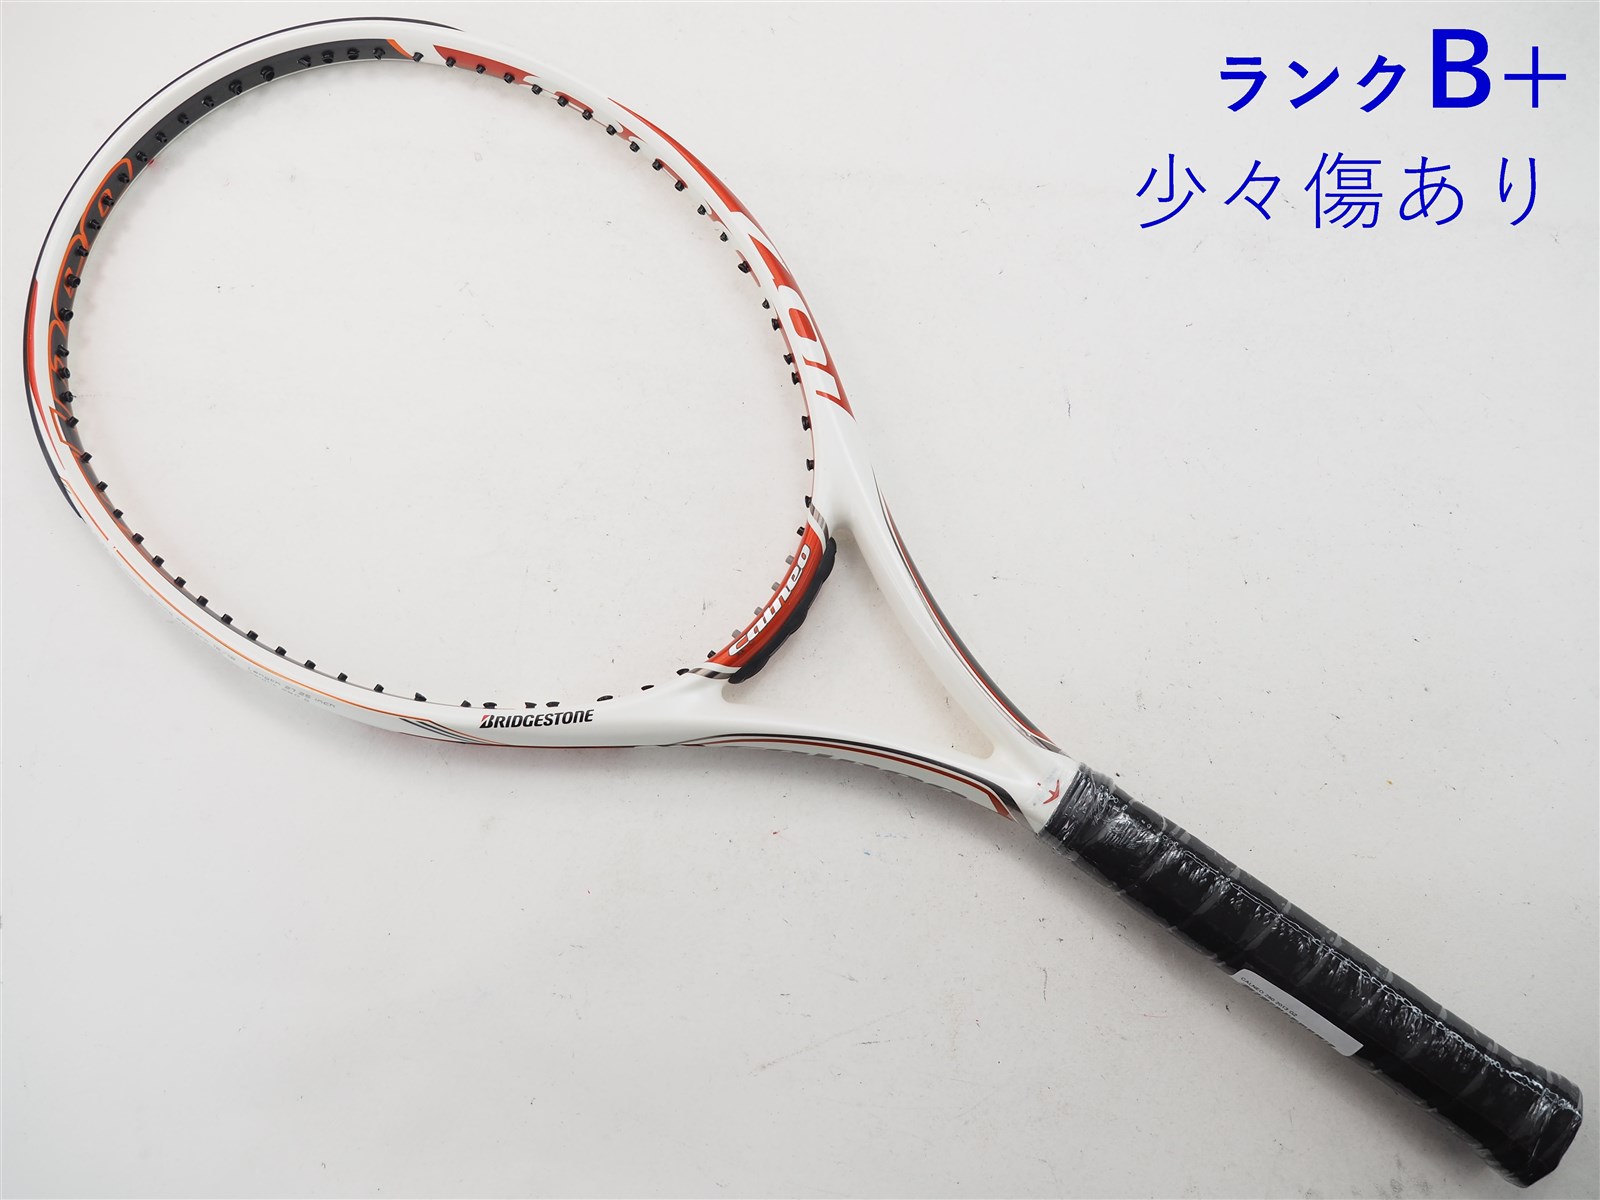 テニスラケット ブリヂストン カルネオ 280 2016年モデル (G2)BRIDGESTONE CALNEO 280 2016